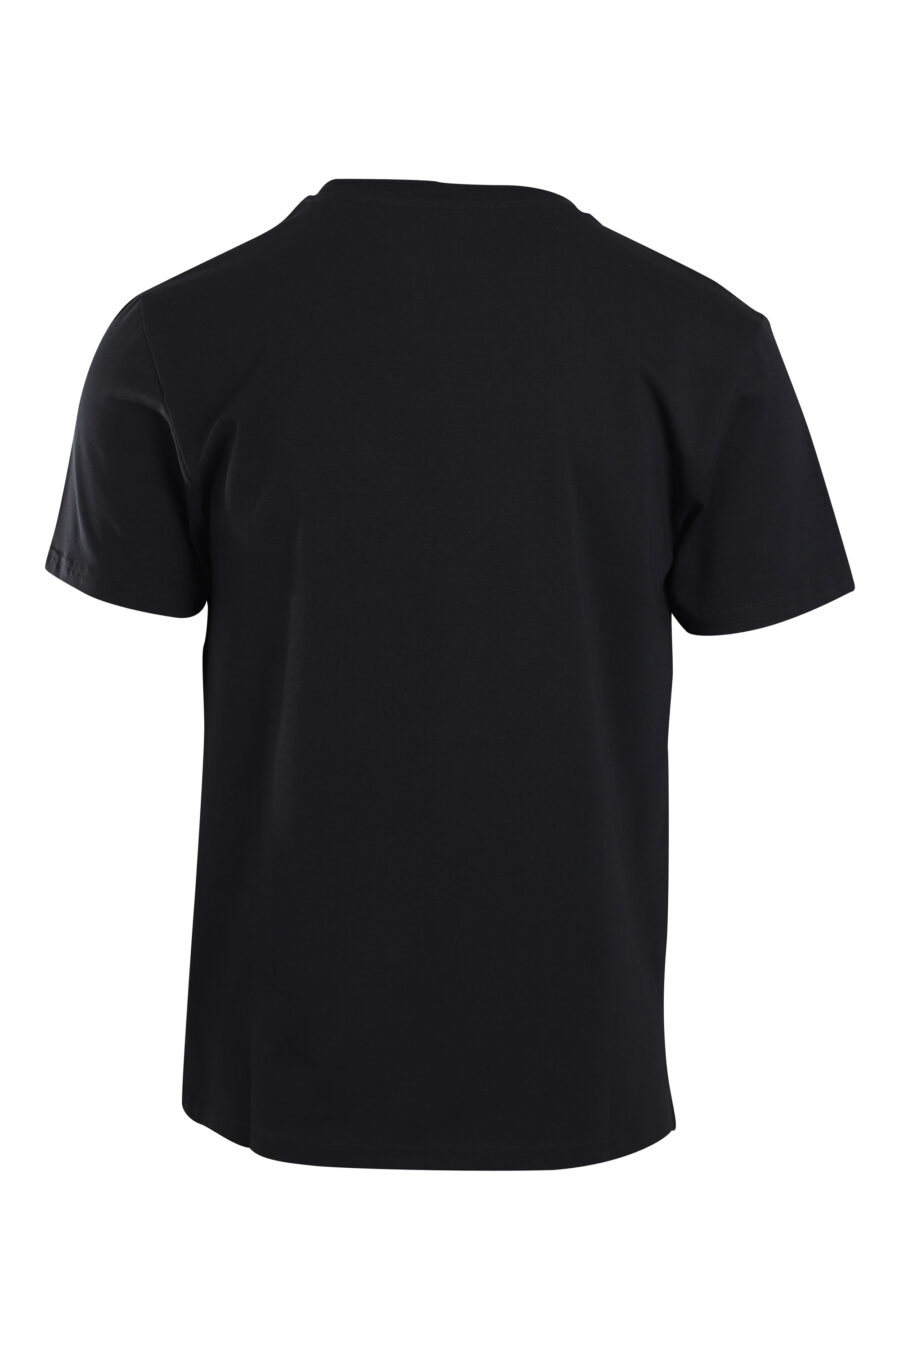 Schwarzes T-Shirt mit Mini-Logo "swim" - IMG 2184